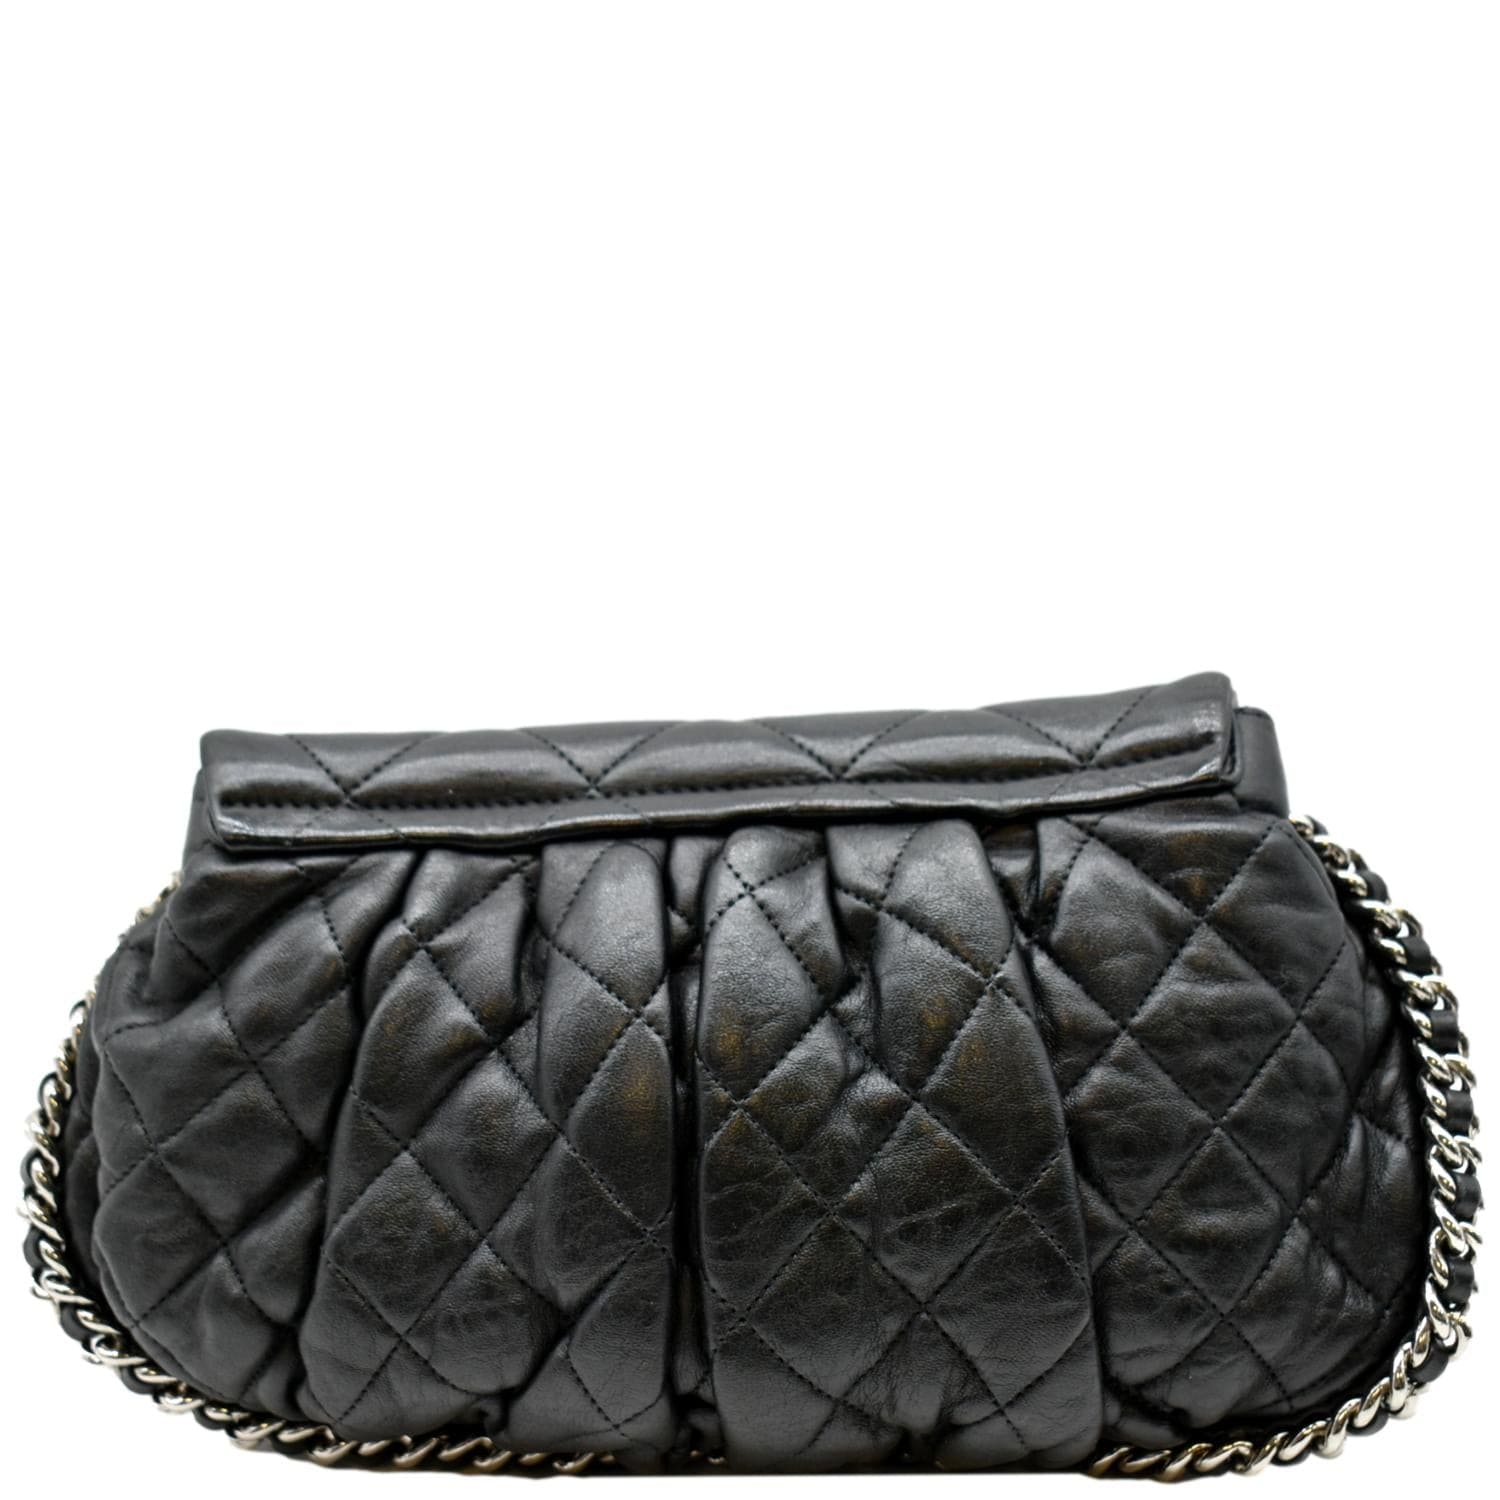 Chanel Flap Bag Gray - 104 For Sale on 1stDibs  chanel grey flap bag, chanel  gray flap bag, gray chanel flap bag